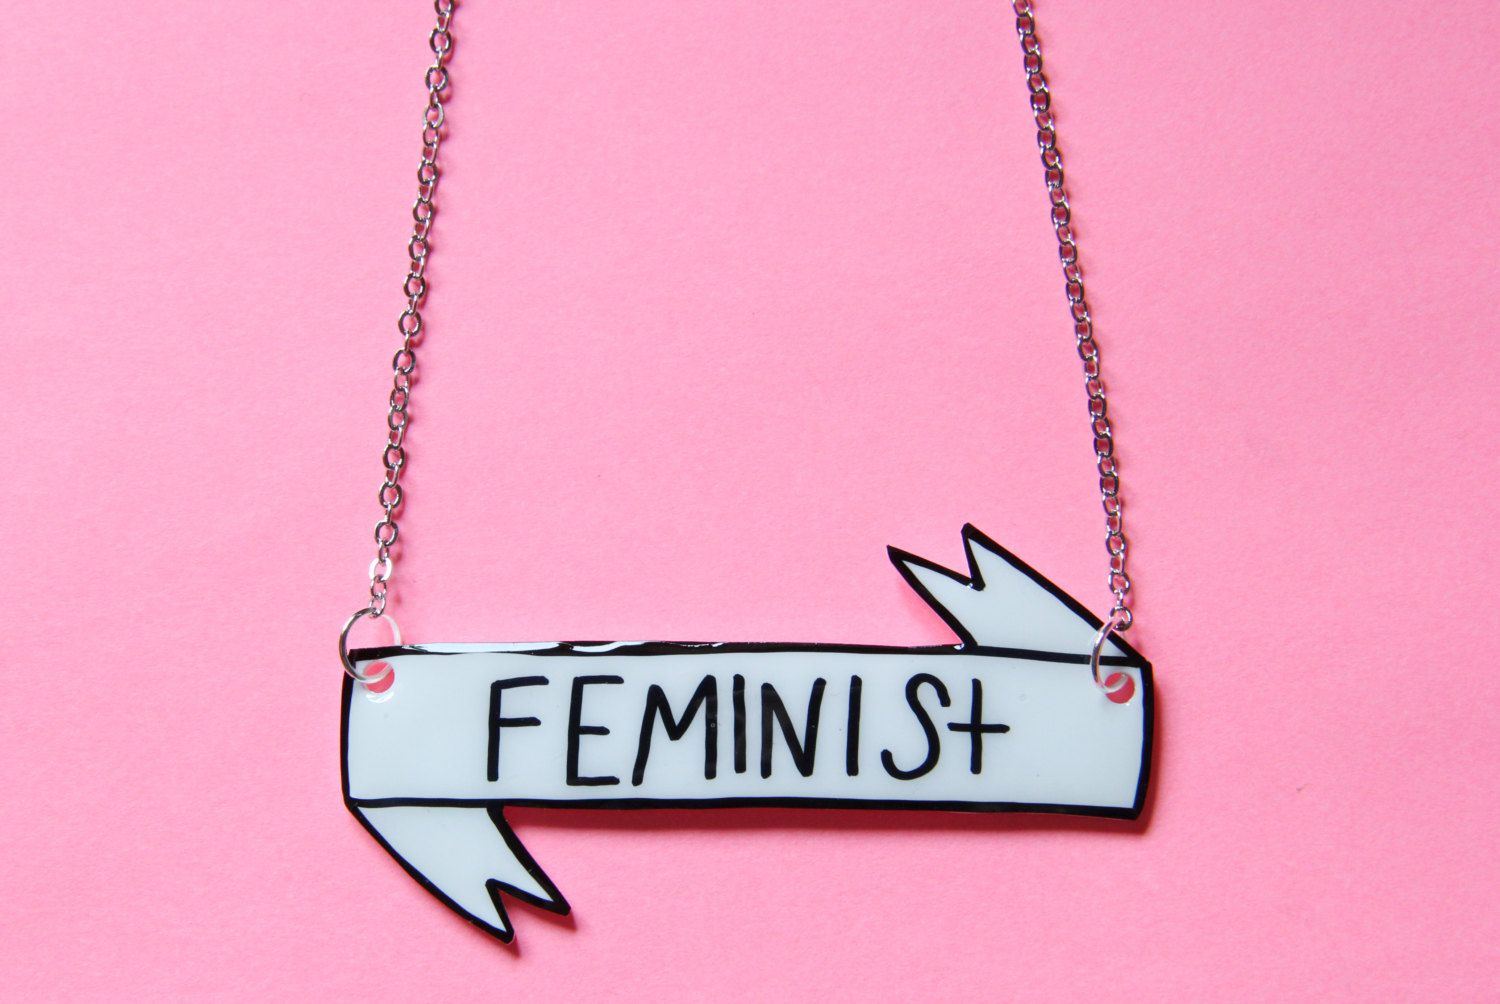 Feminist Wallpaper